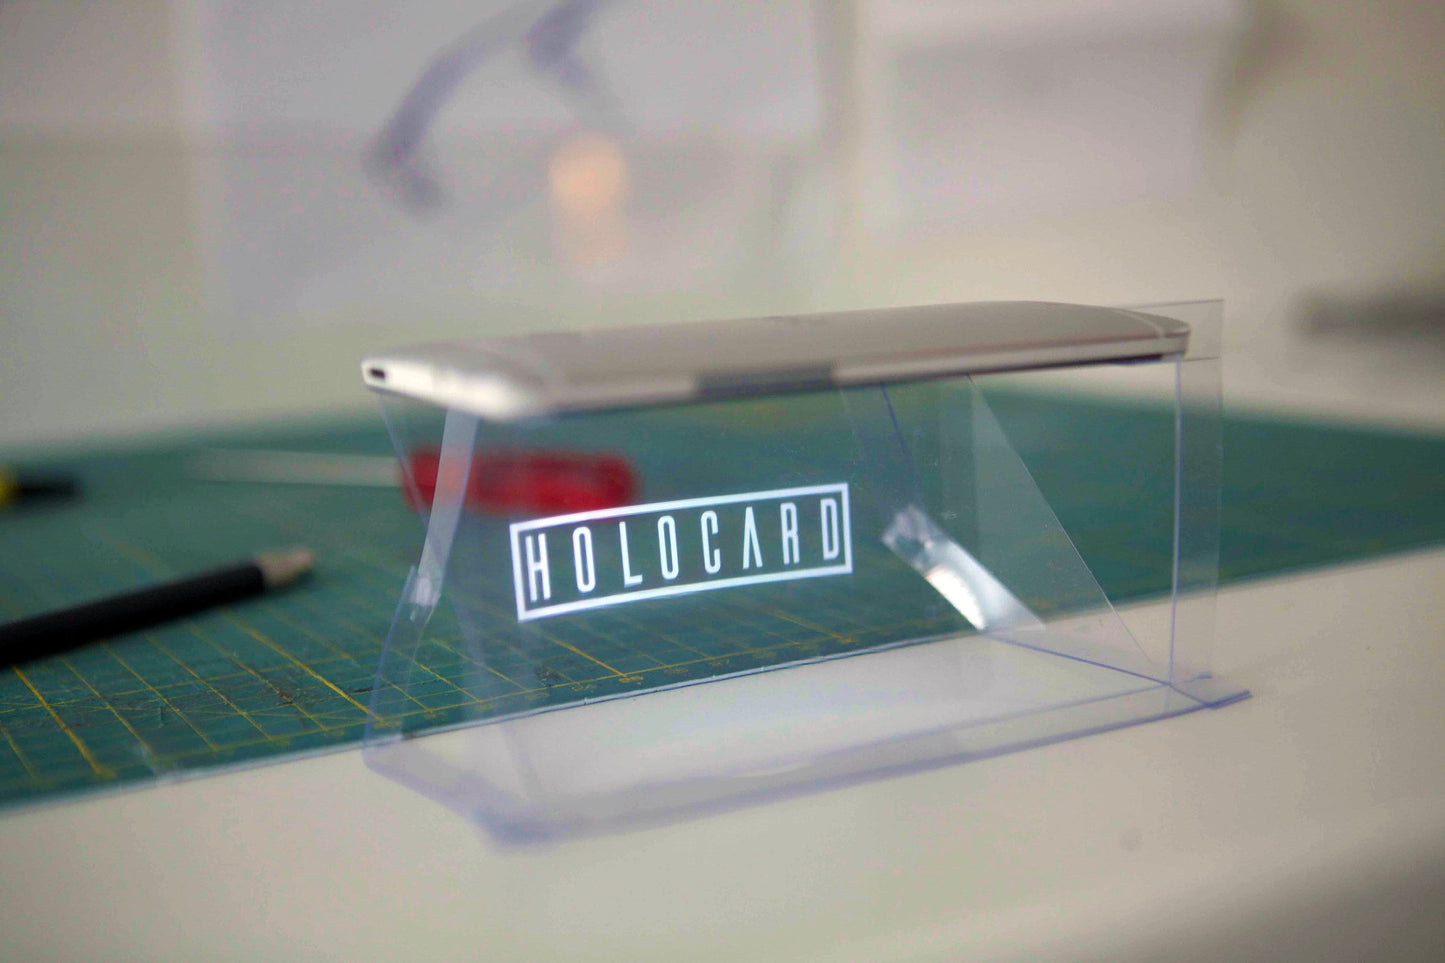 HOLOCARD | Hologramdisplay för smartphones | Använd den här nya tekniska prylen för att se hologram med din smartphone